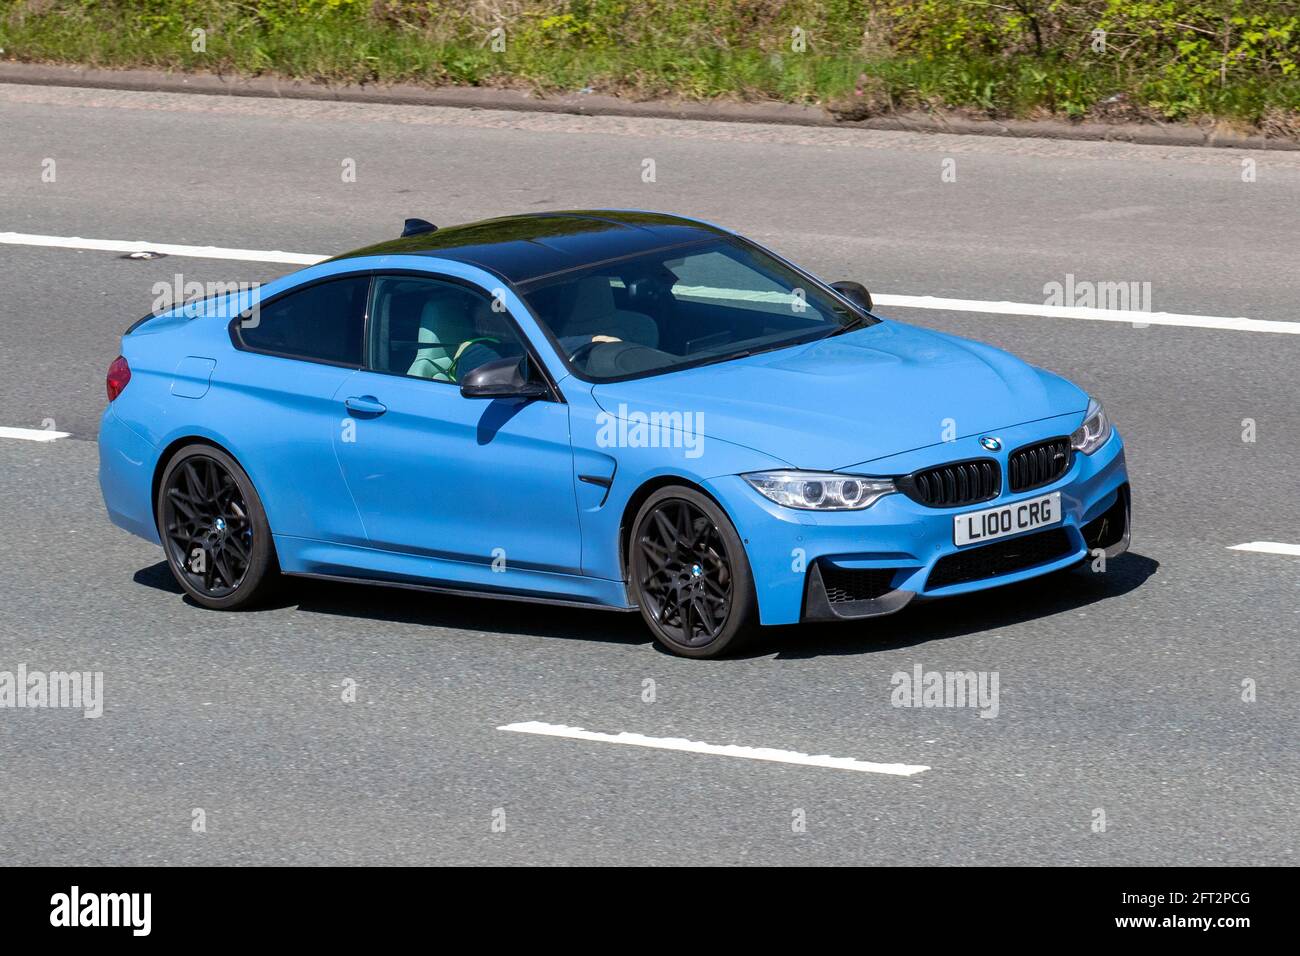 2015 blu BMW M4 S-A 2979cc 2DR coupé; traffico veicolare, veicoli in movimento, automobili, veicoli che guidano su strade del Regno Unito, motori, automobilismo sulla rete stradale dell'autostrada M6 del Regno Unito. Foto Stock